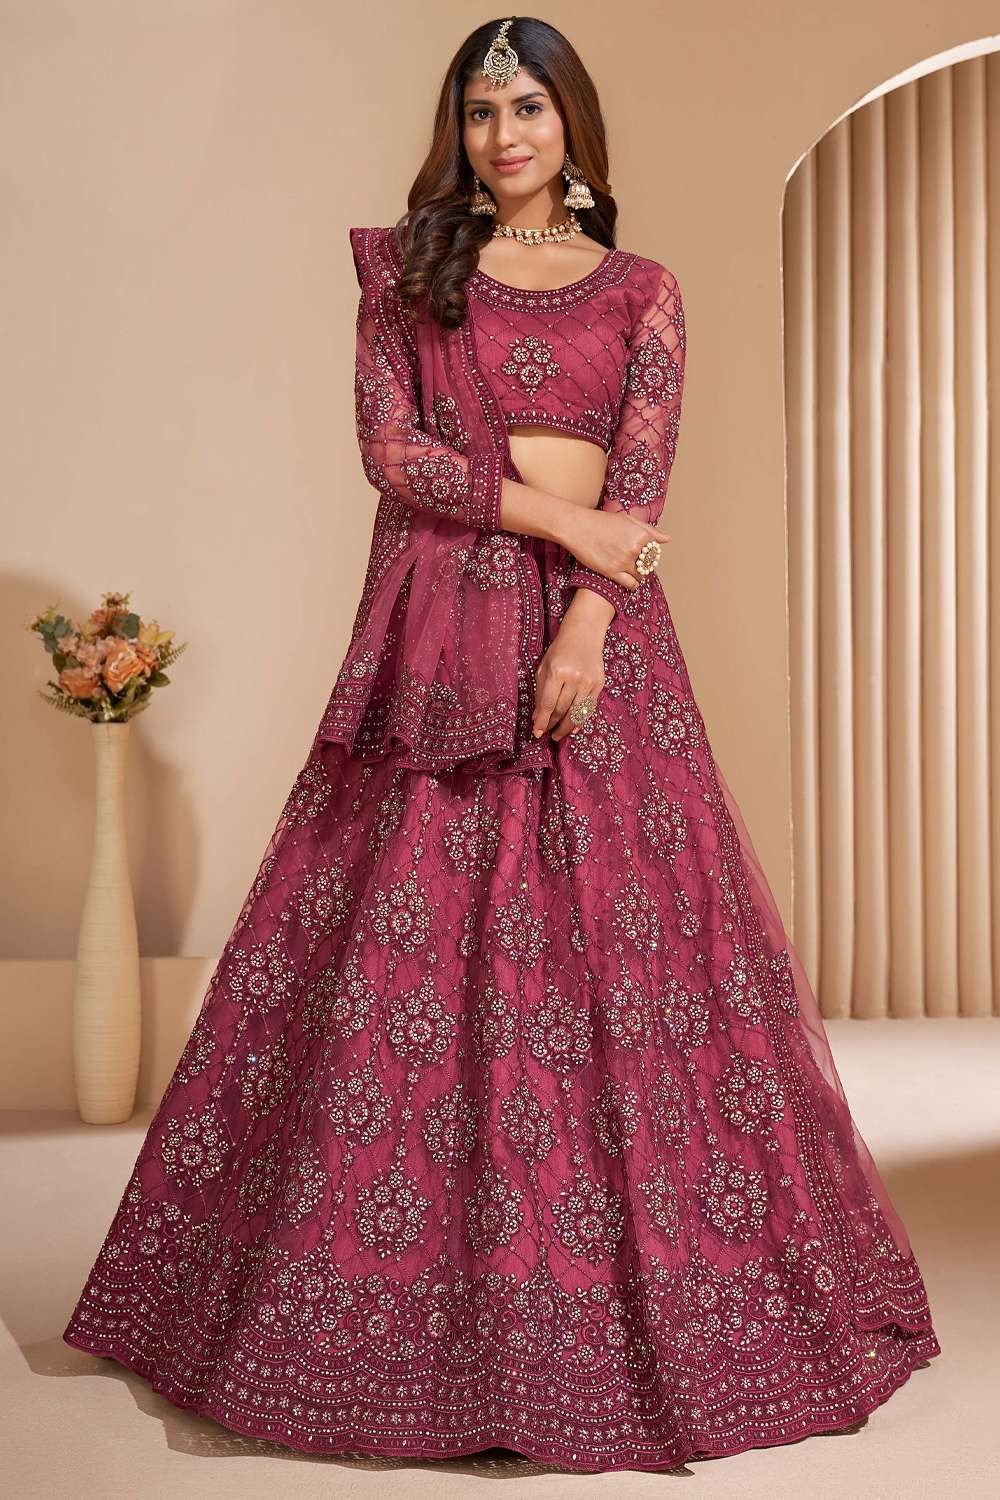 Buy Sabyasachi Lehenga Choli for Women or Girls Lehenga Choli Wedding Wear  Outfits and Party Wear Lengha Choli Bridal Bridesmaid Lehenga Online in  India - Etsy